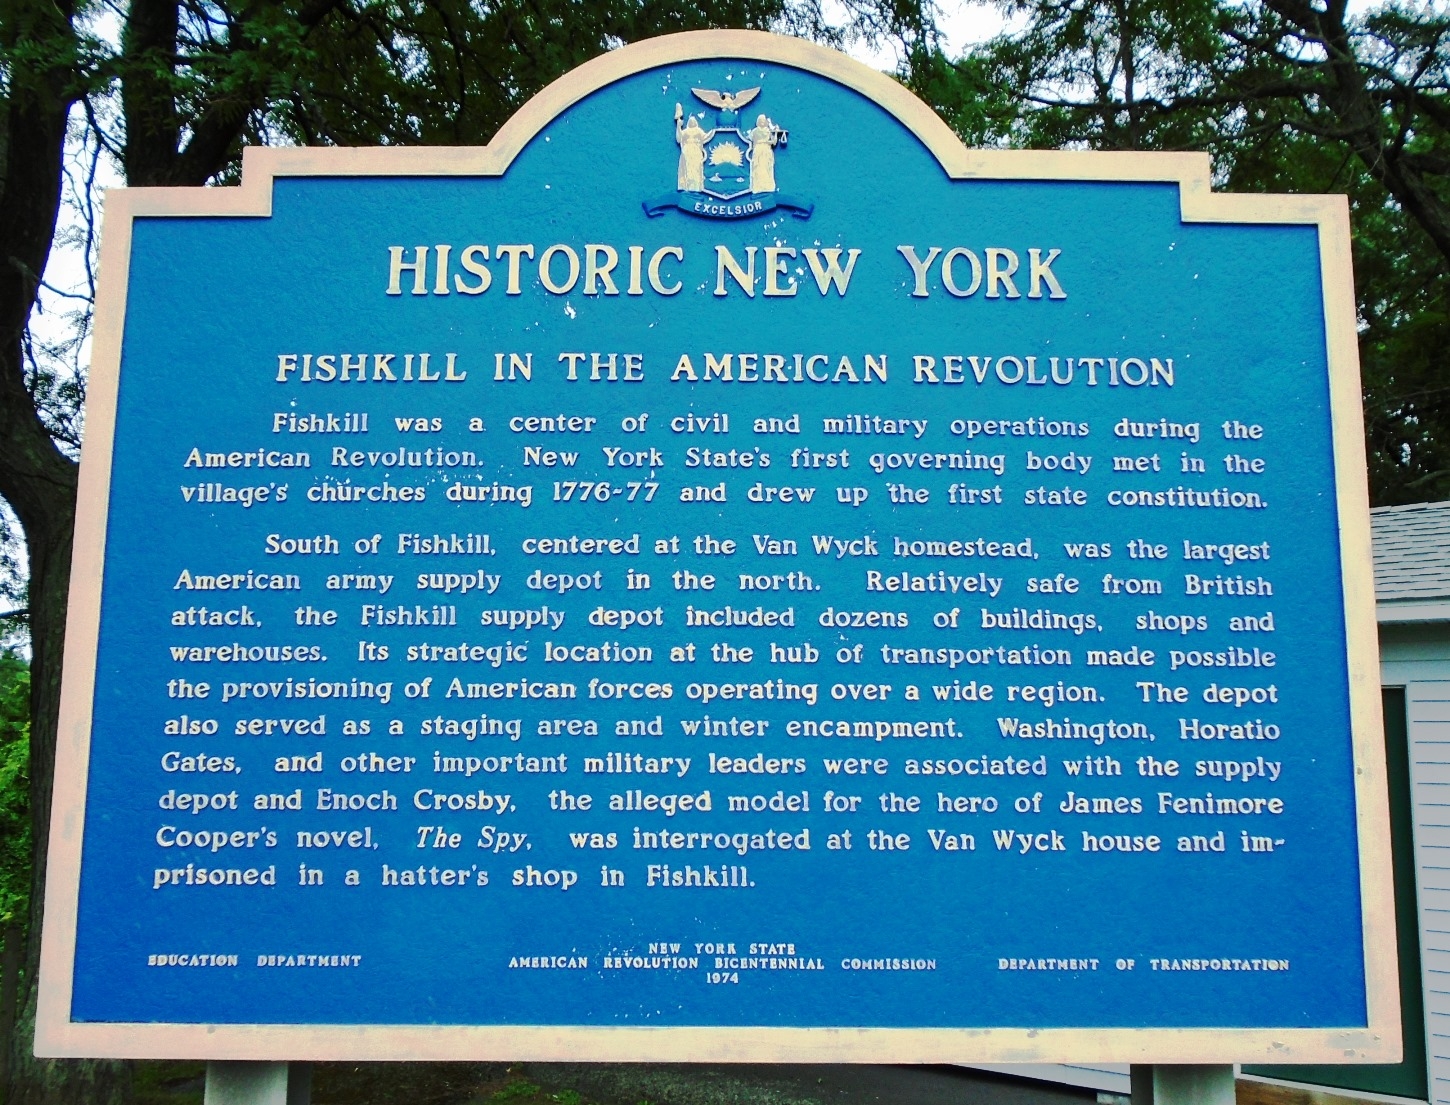 Fishkill in the American Revolution